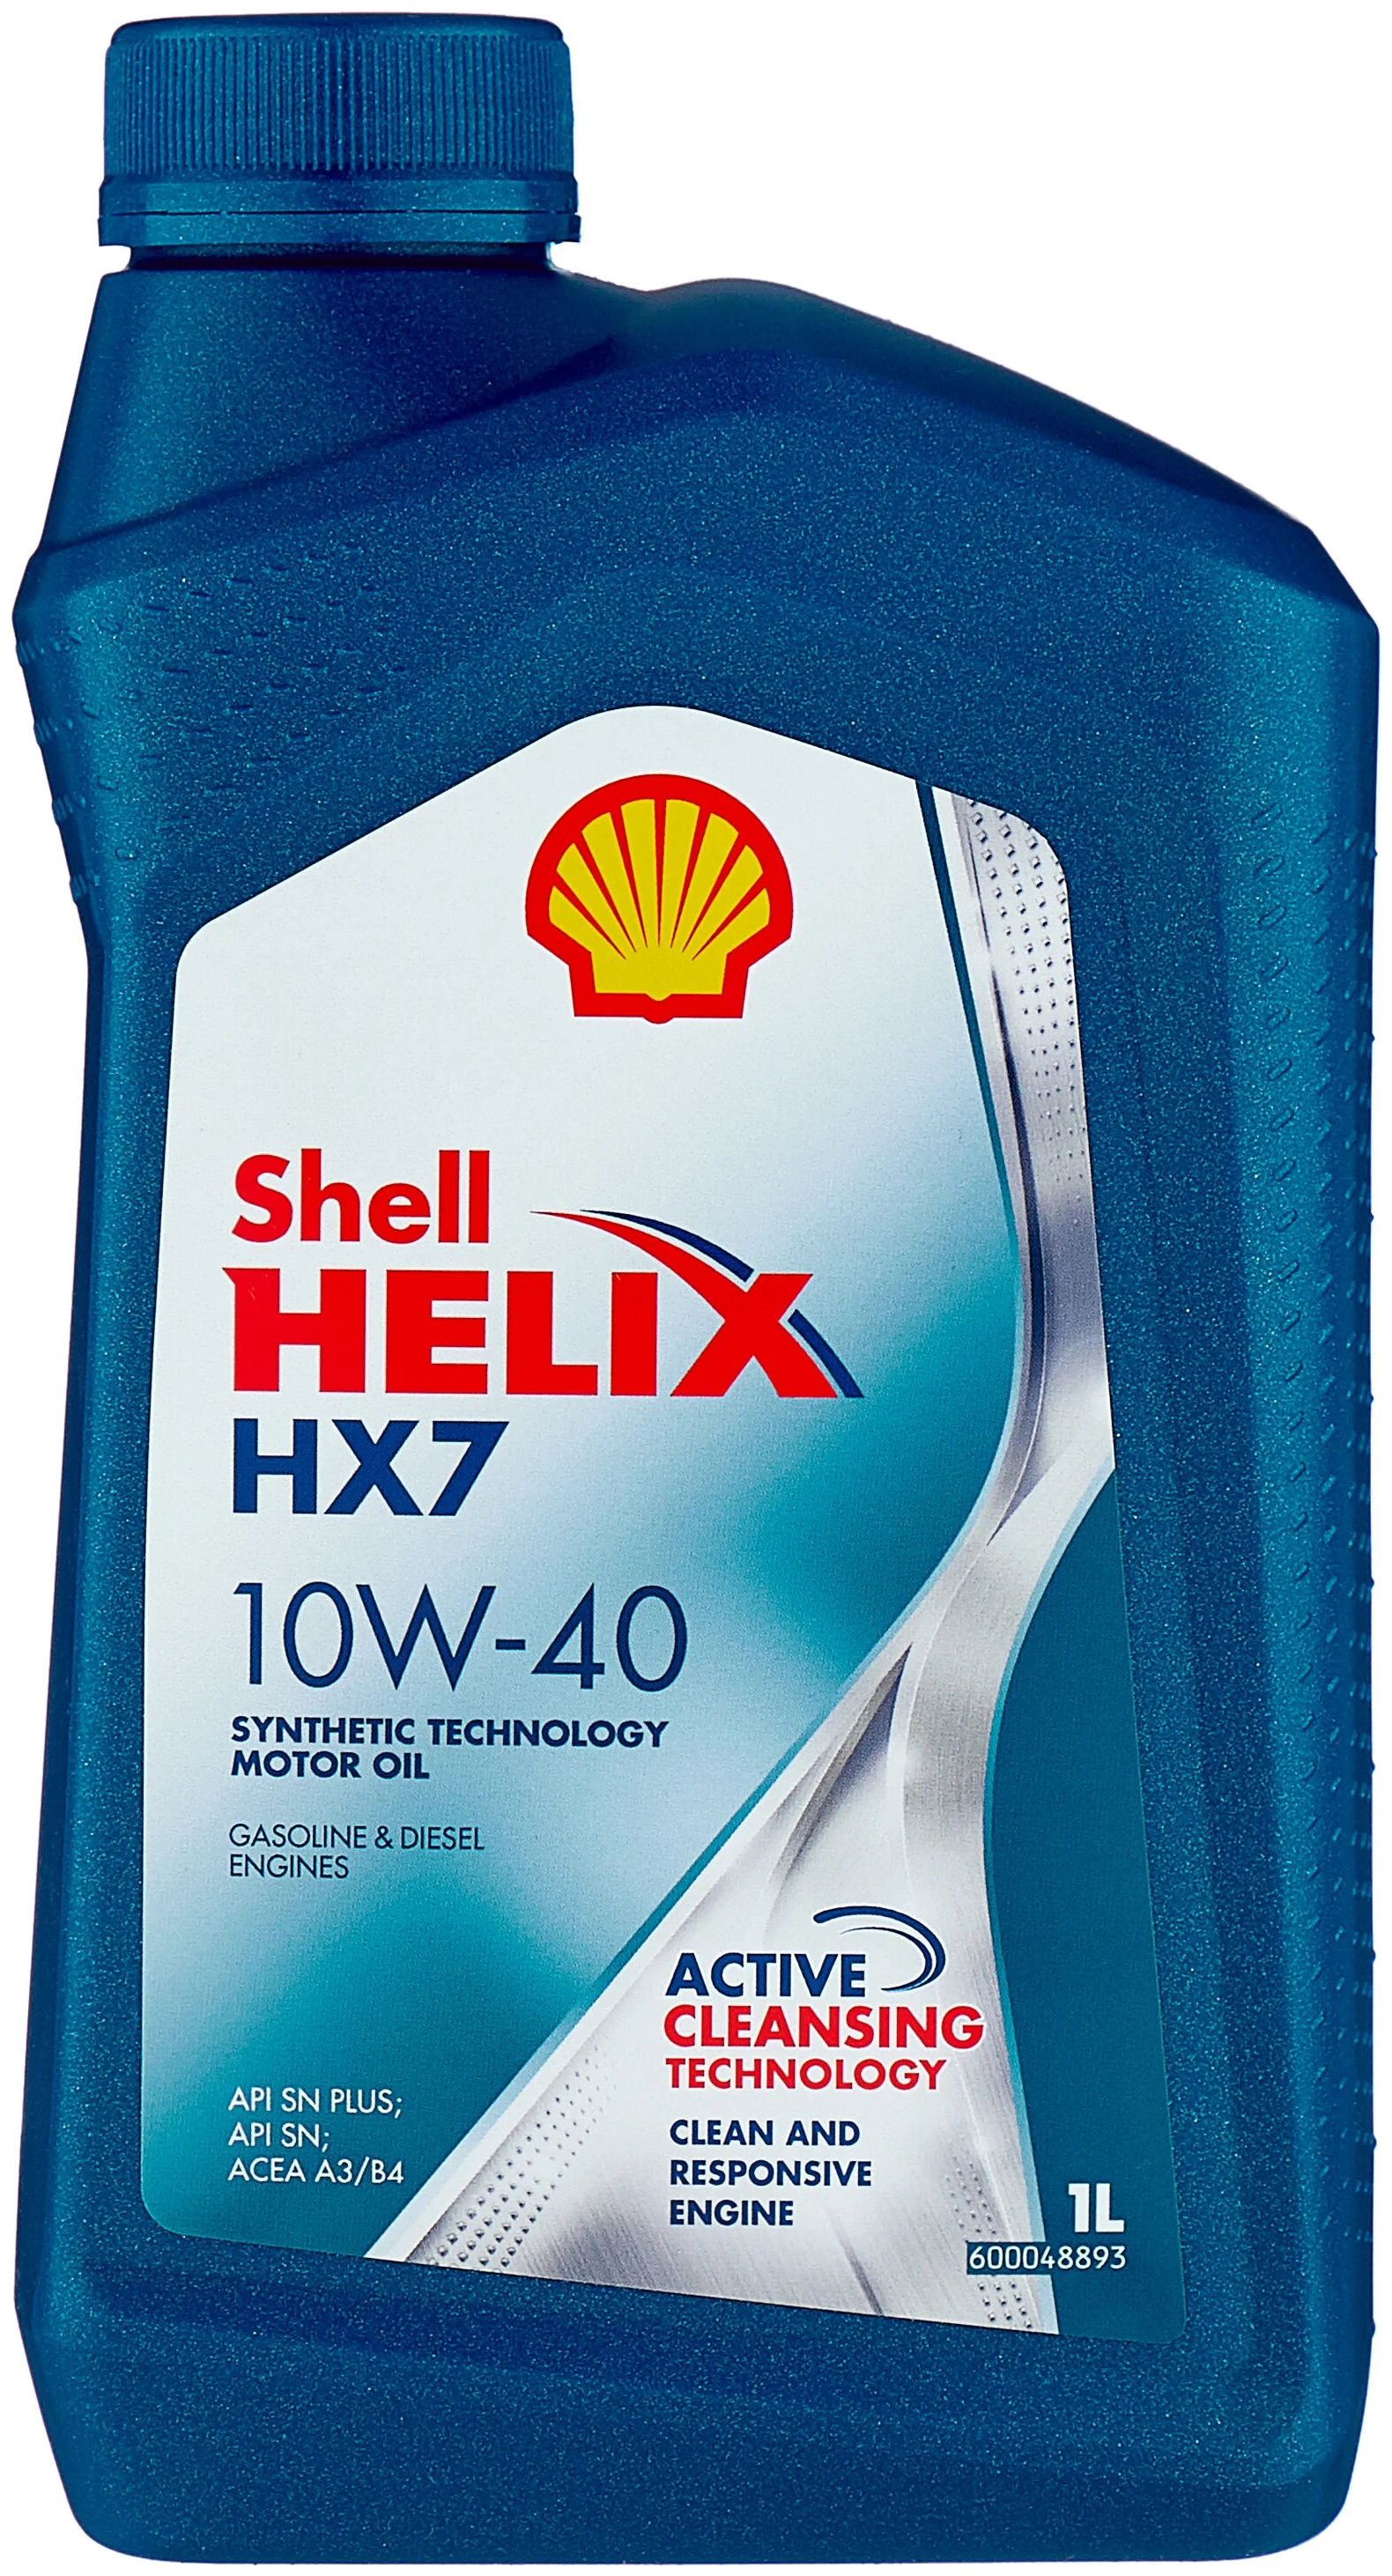 SHELL Helix HX7 10W-40 - класс вязкости: 10W-40